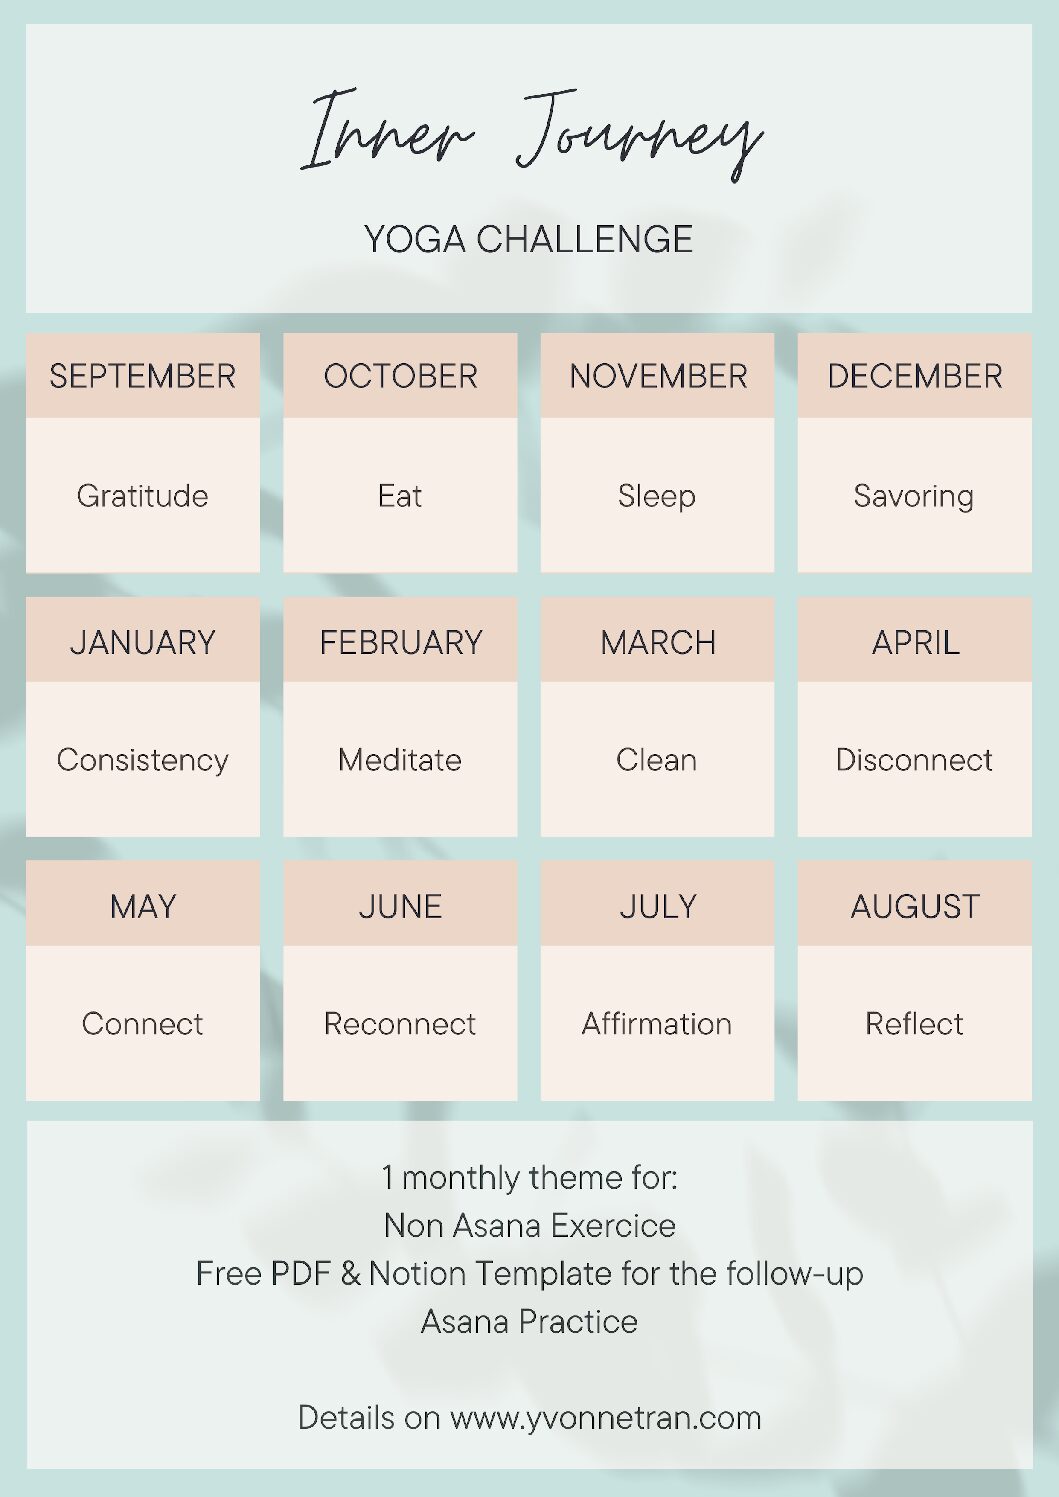 Inner Journey Yoga Challenge, un challenge de yoga sans asana : Calendrier des thèmes par mois